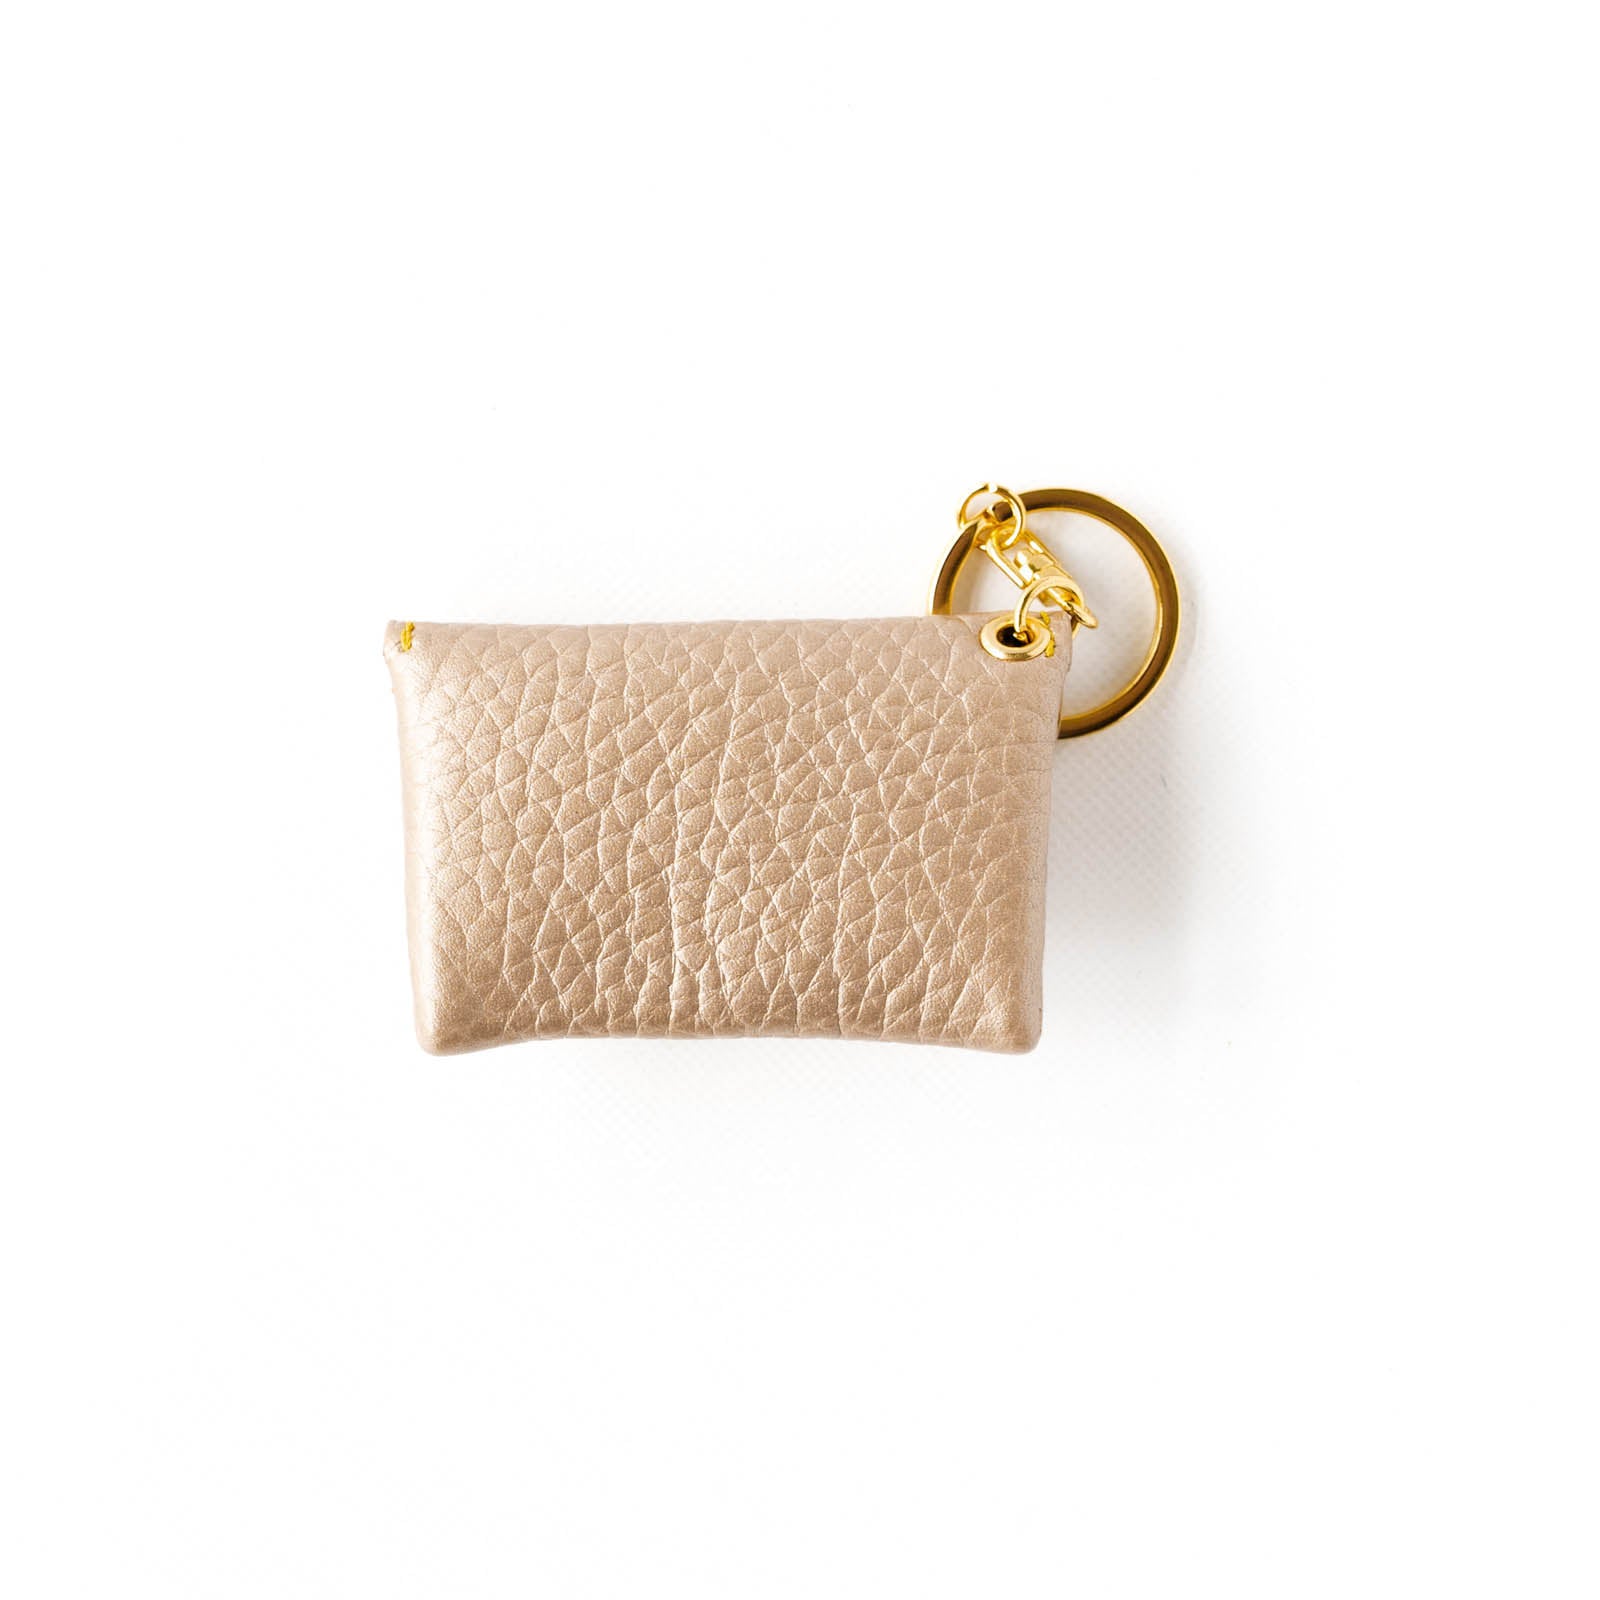 Soft leather flap minimini key ring Taurillon Clemence